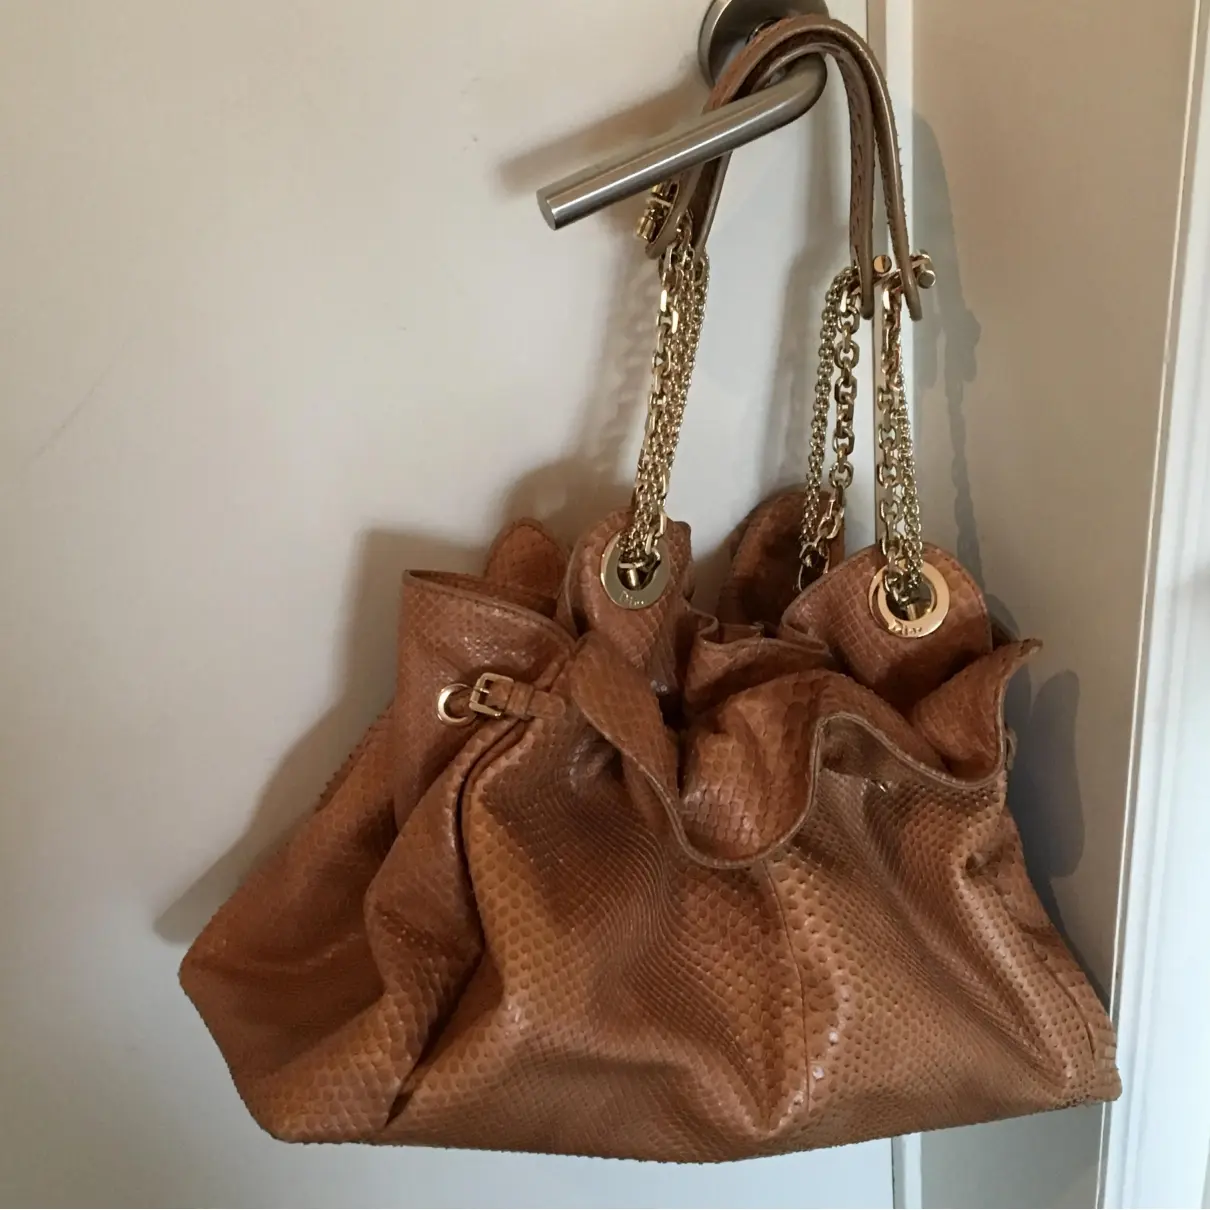 Dior Le Trente python handbag for sale